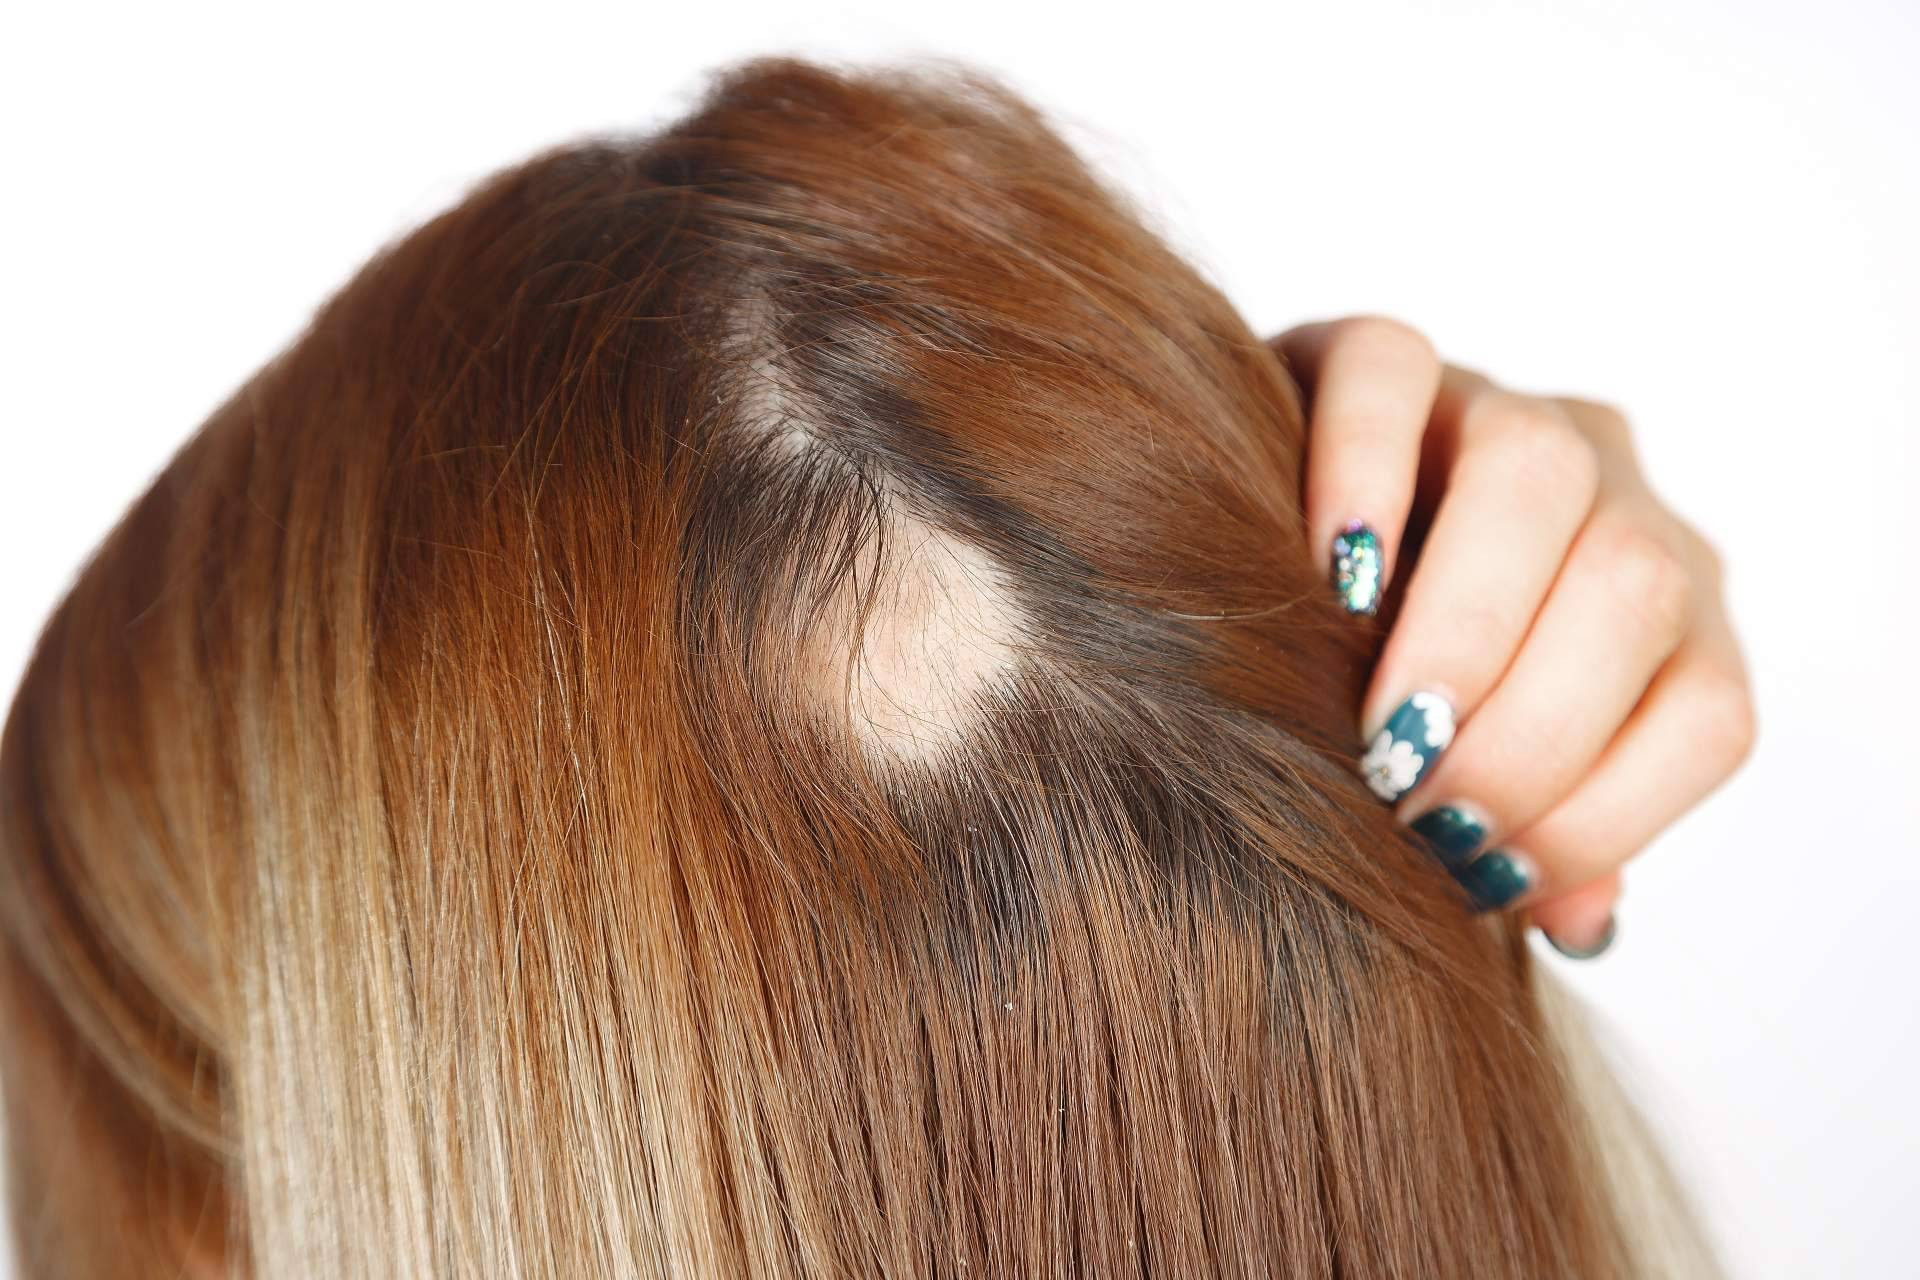  El método de Capilar Innovation Clinic para combatir la alopecia femenina 